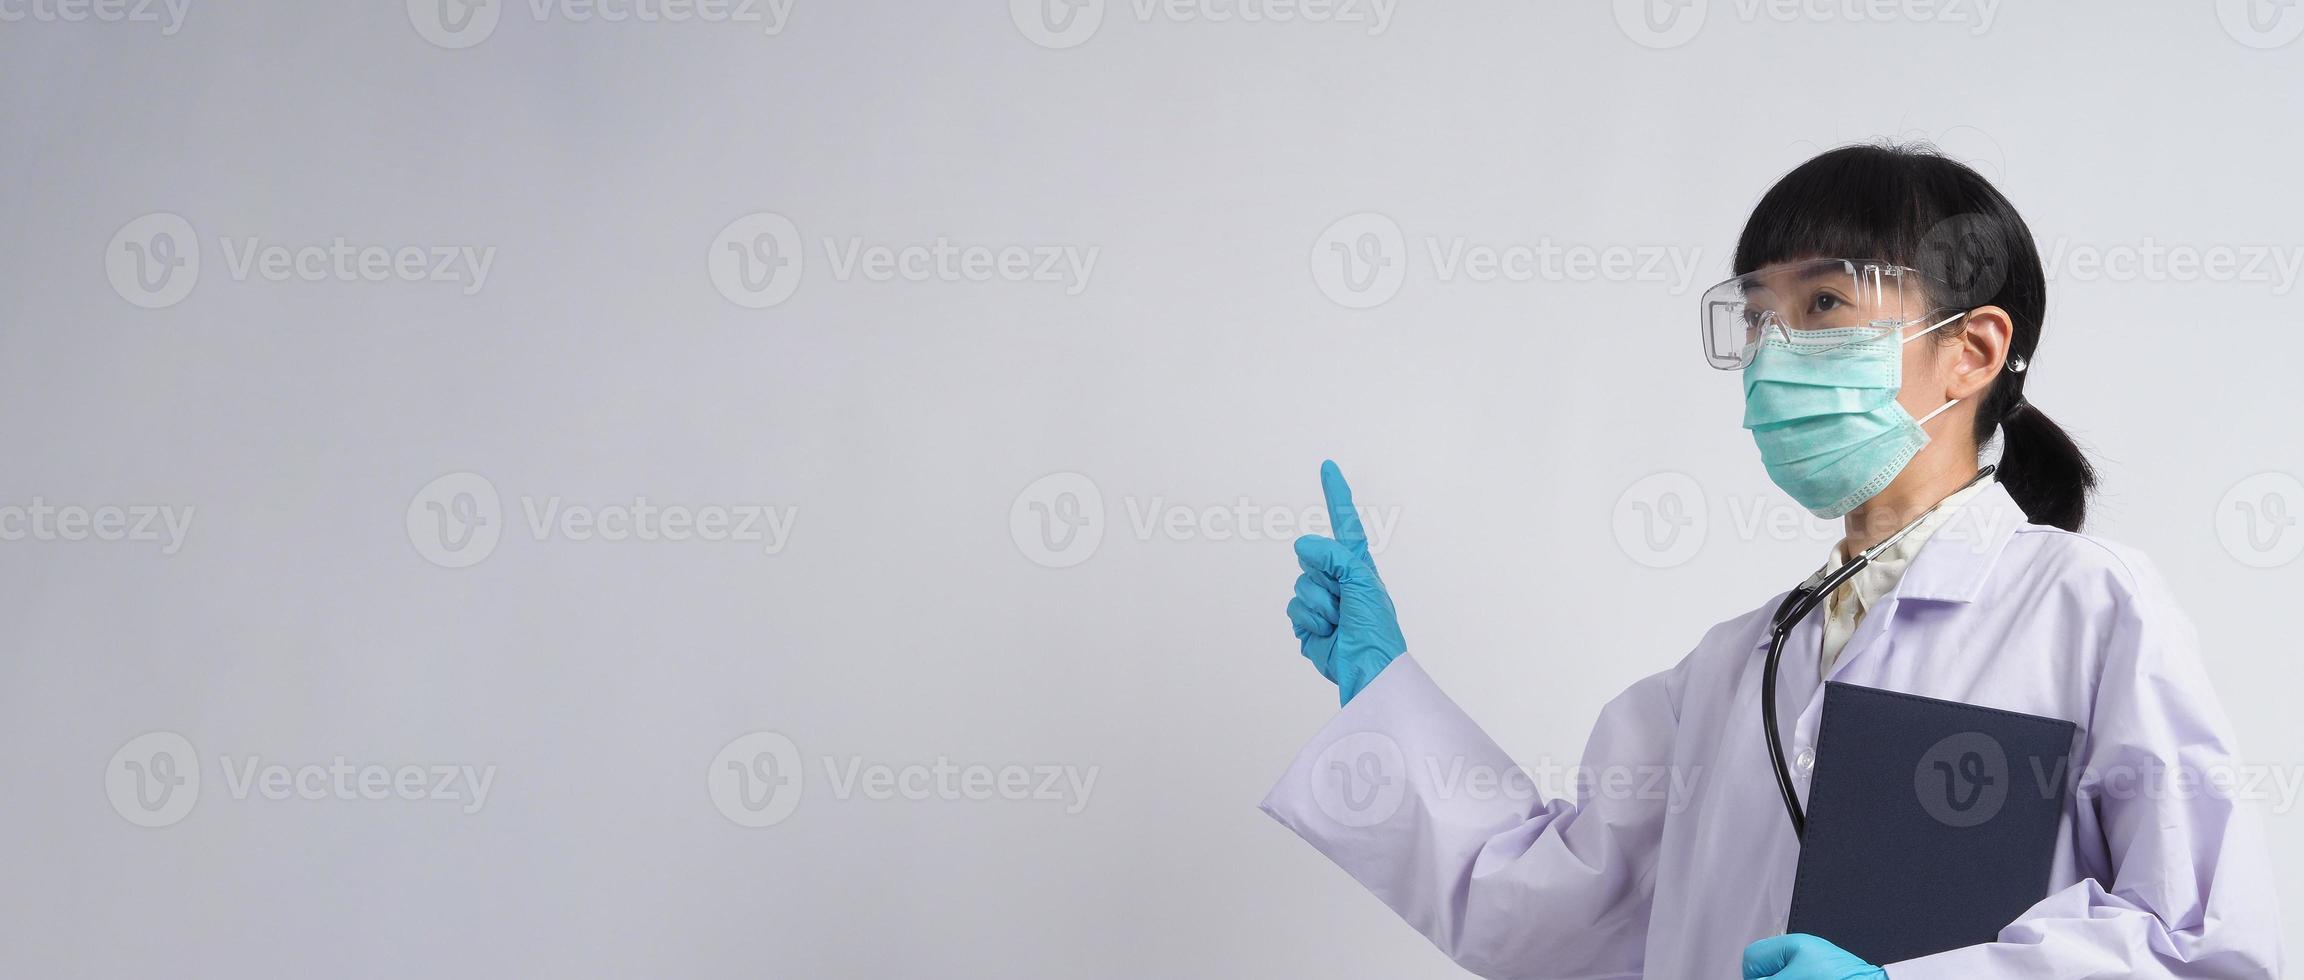 Arzt in Uniform zeigt auf einen leeren Bereich. Handbewegung. foto